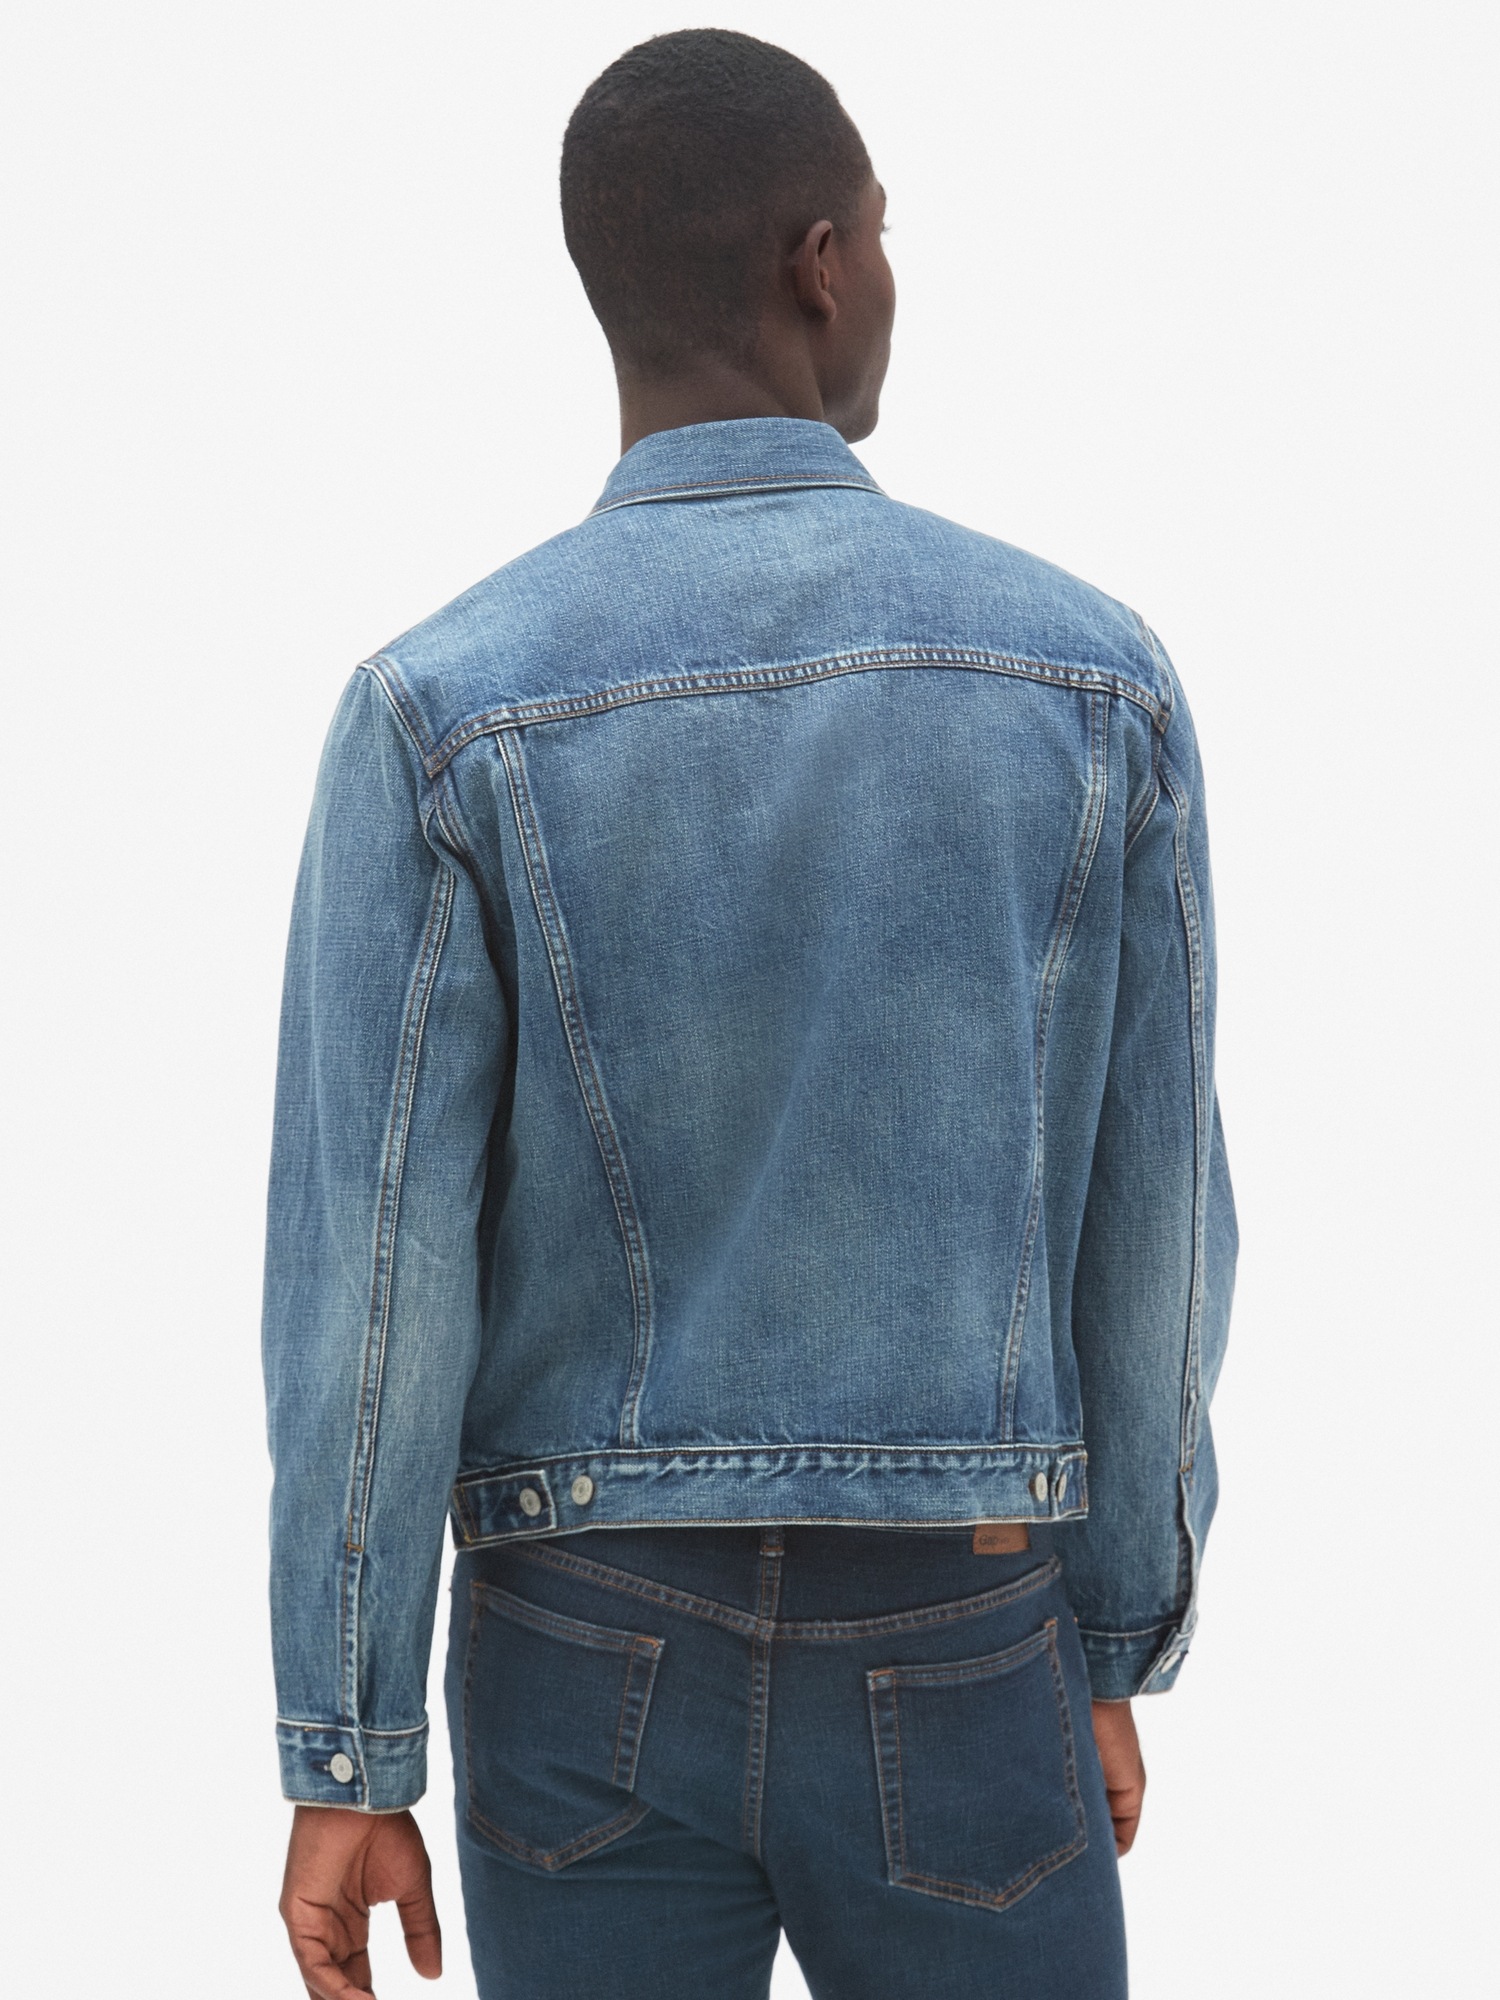 gap blue jean jacket